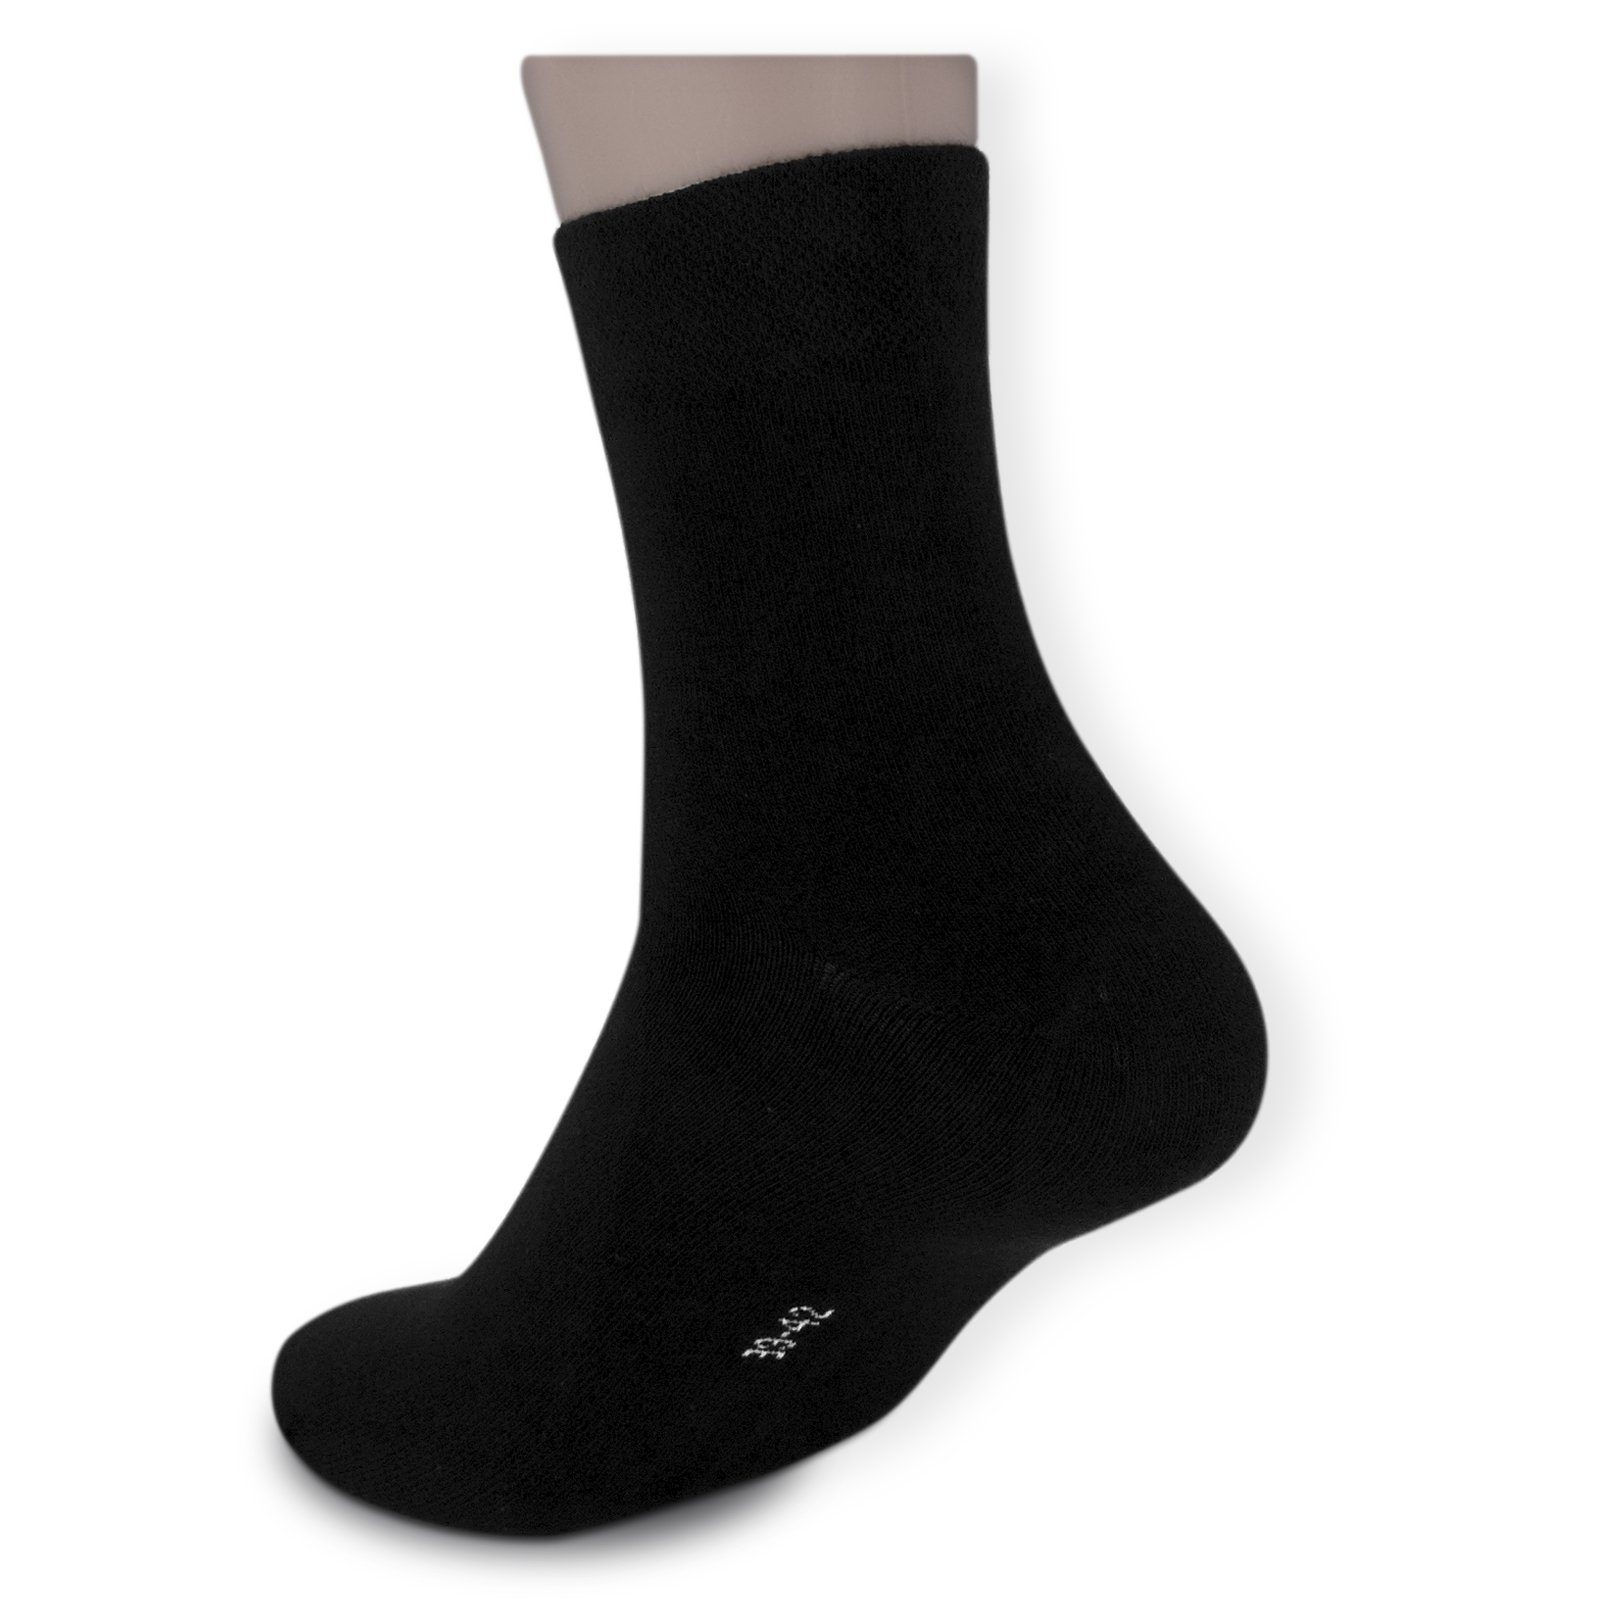 Die Sockenbude Komfortbund 5-Paar, Business-Socken ohne Kurzsocken mit Gummi BLACK schwarz) (Bund